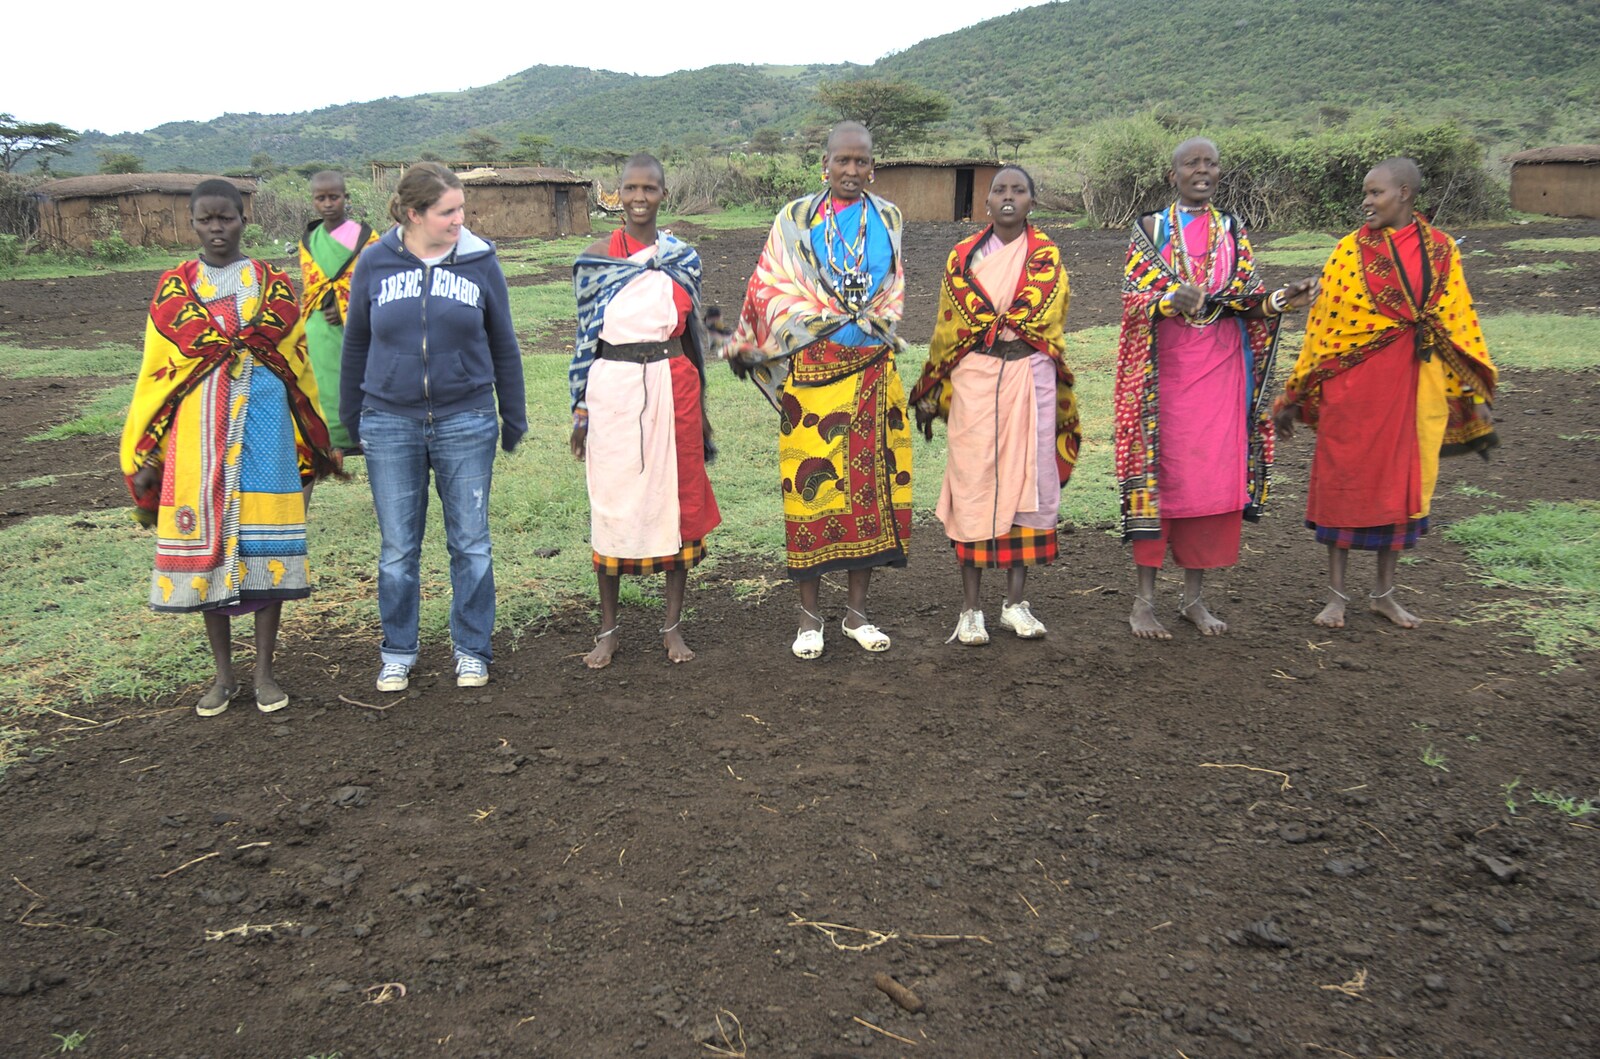 Isobel is invited to join in from Maasai Mara Safari and a Maasai Village, Ololaimutia, Kenya - 5th November 2010